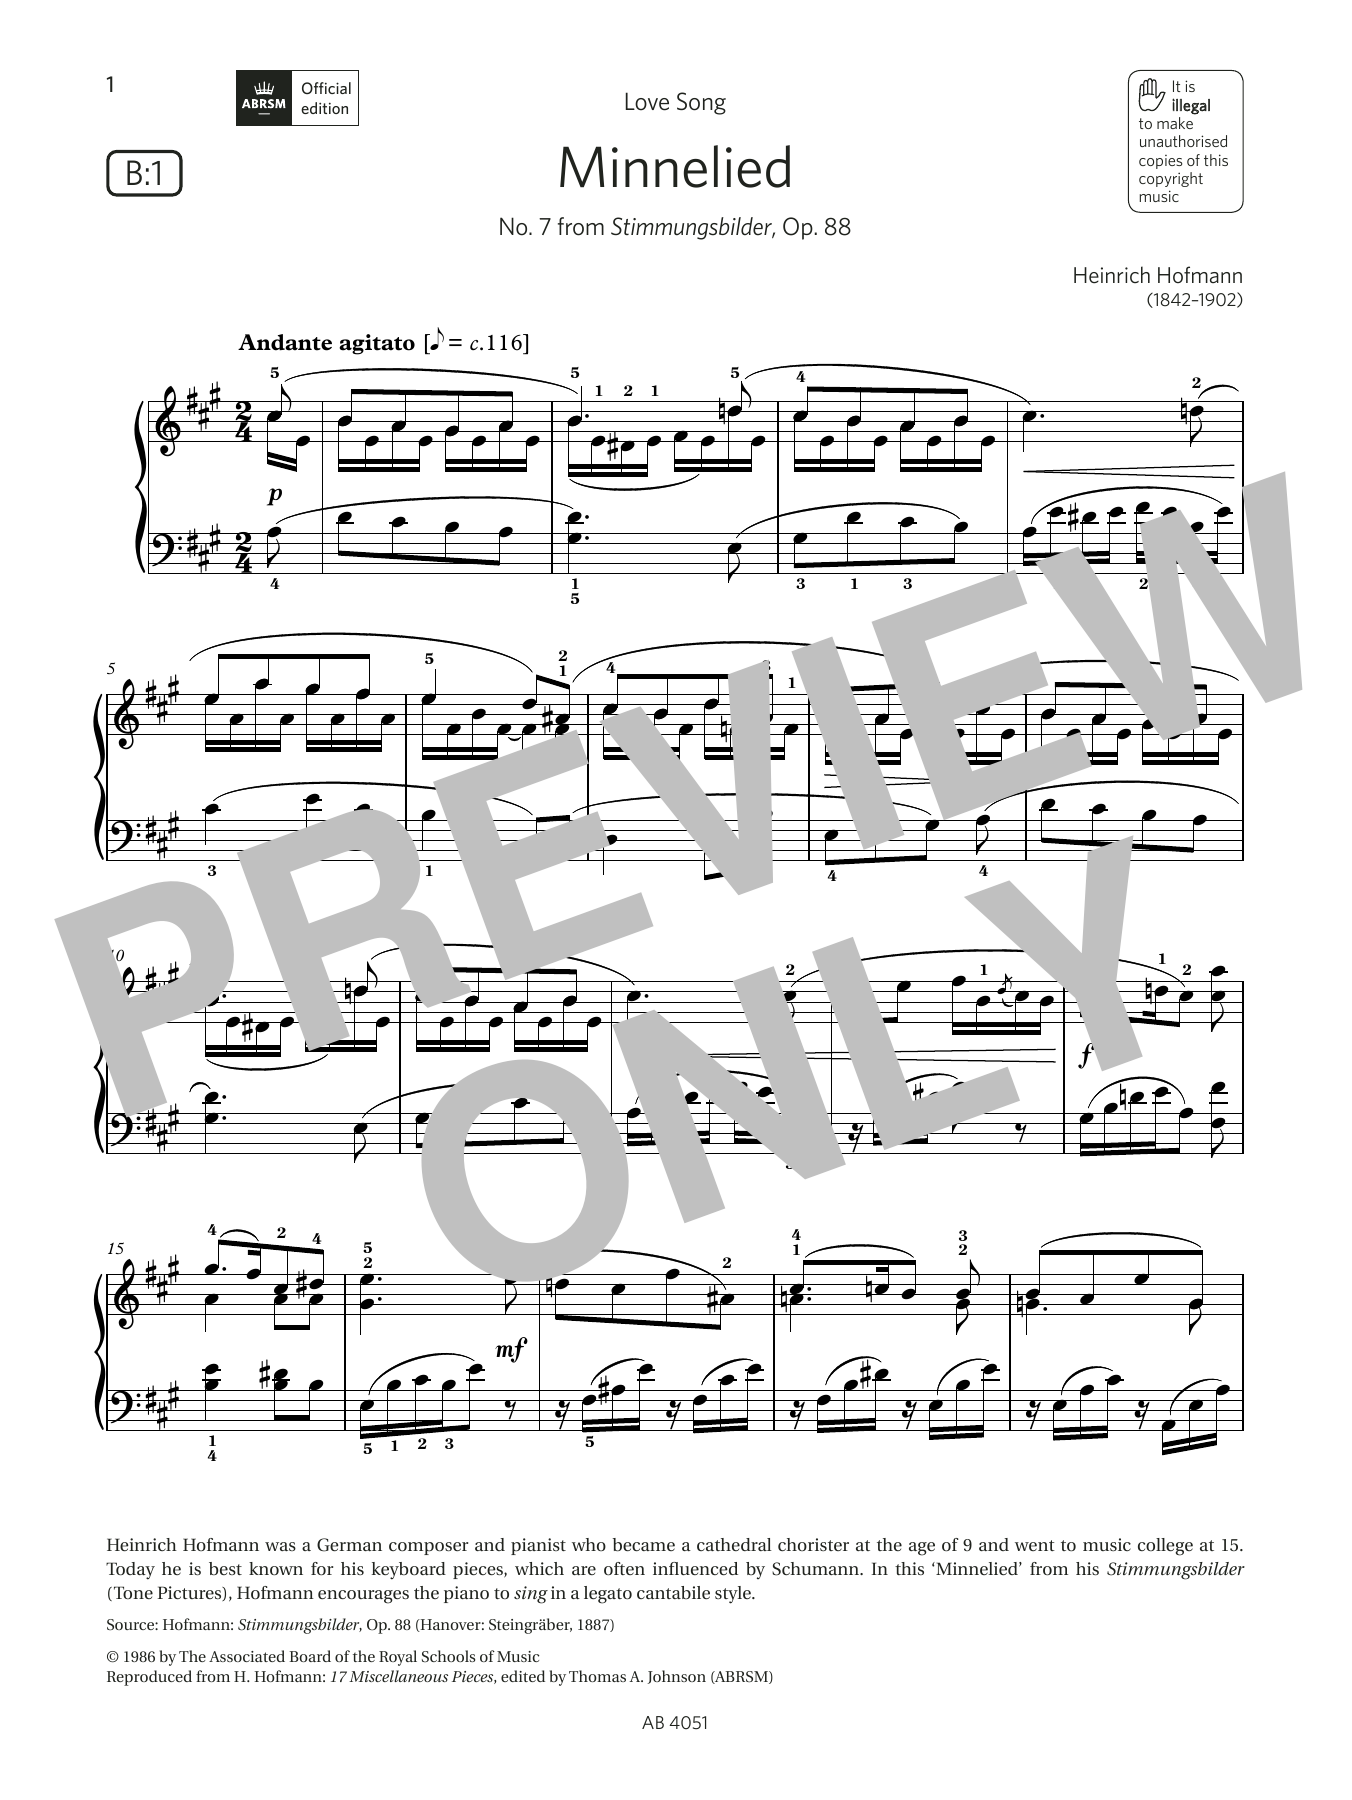 Download Heinrich Hofmann Minnelied (Grade 5, list B1, from the A Sheet Music